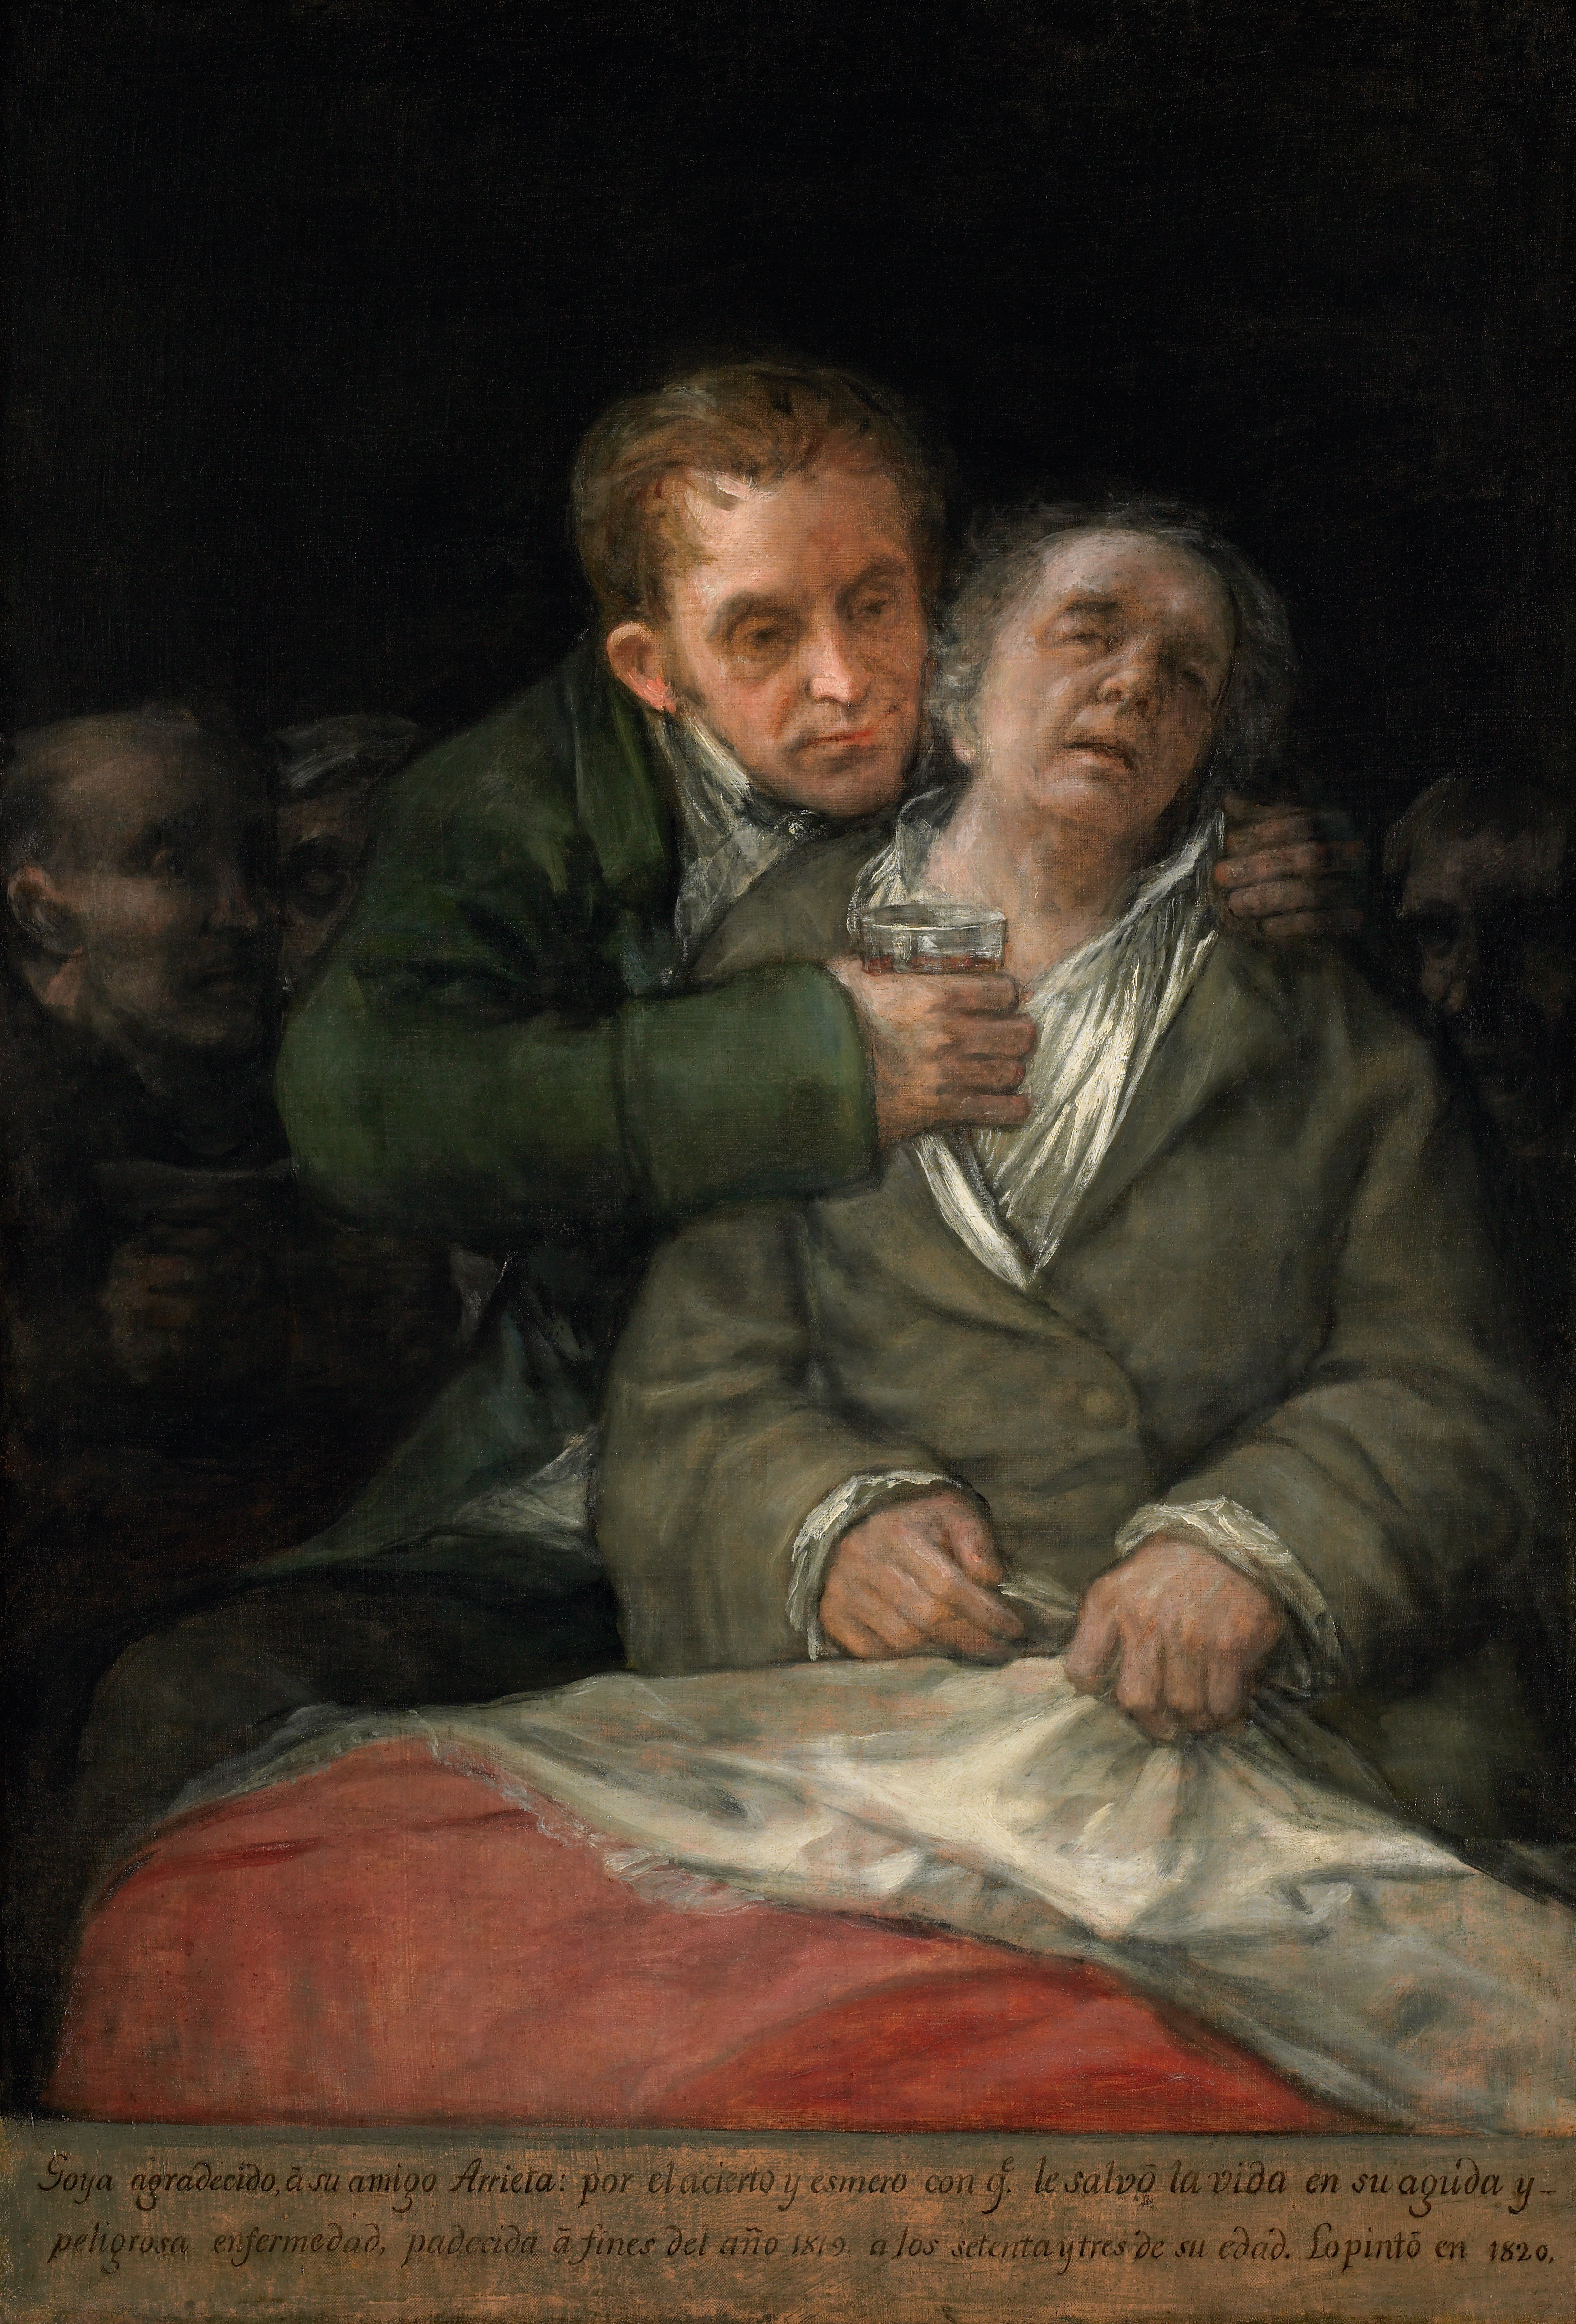 Dr. Arrieta ile Otoportre by Francisco Goya - 1820 - 30.125 x 45.125 in 